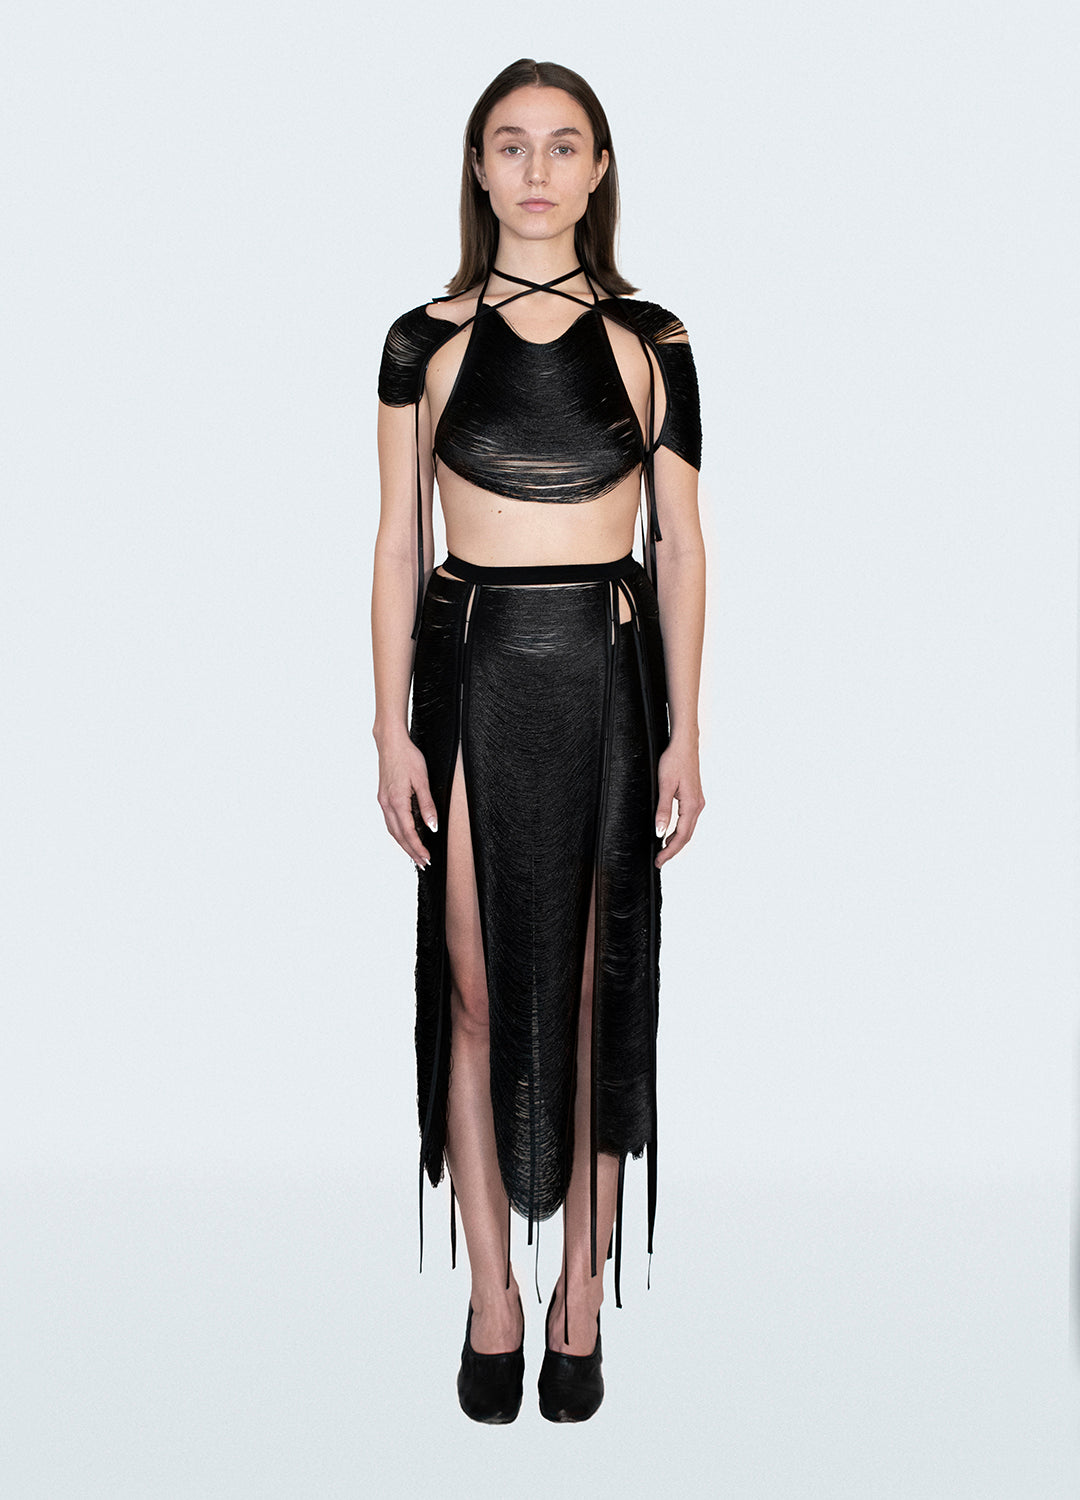 Threads Midi Skirt - Black, White or Sand